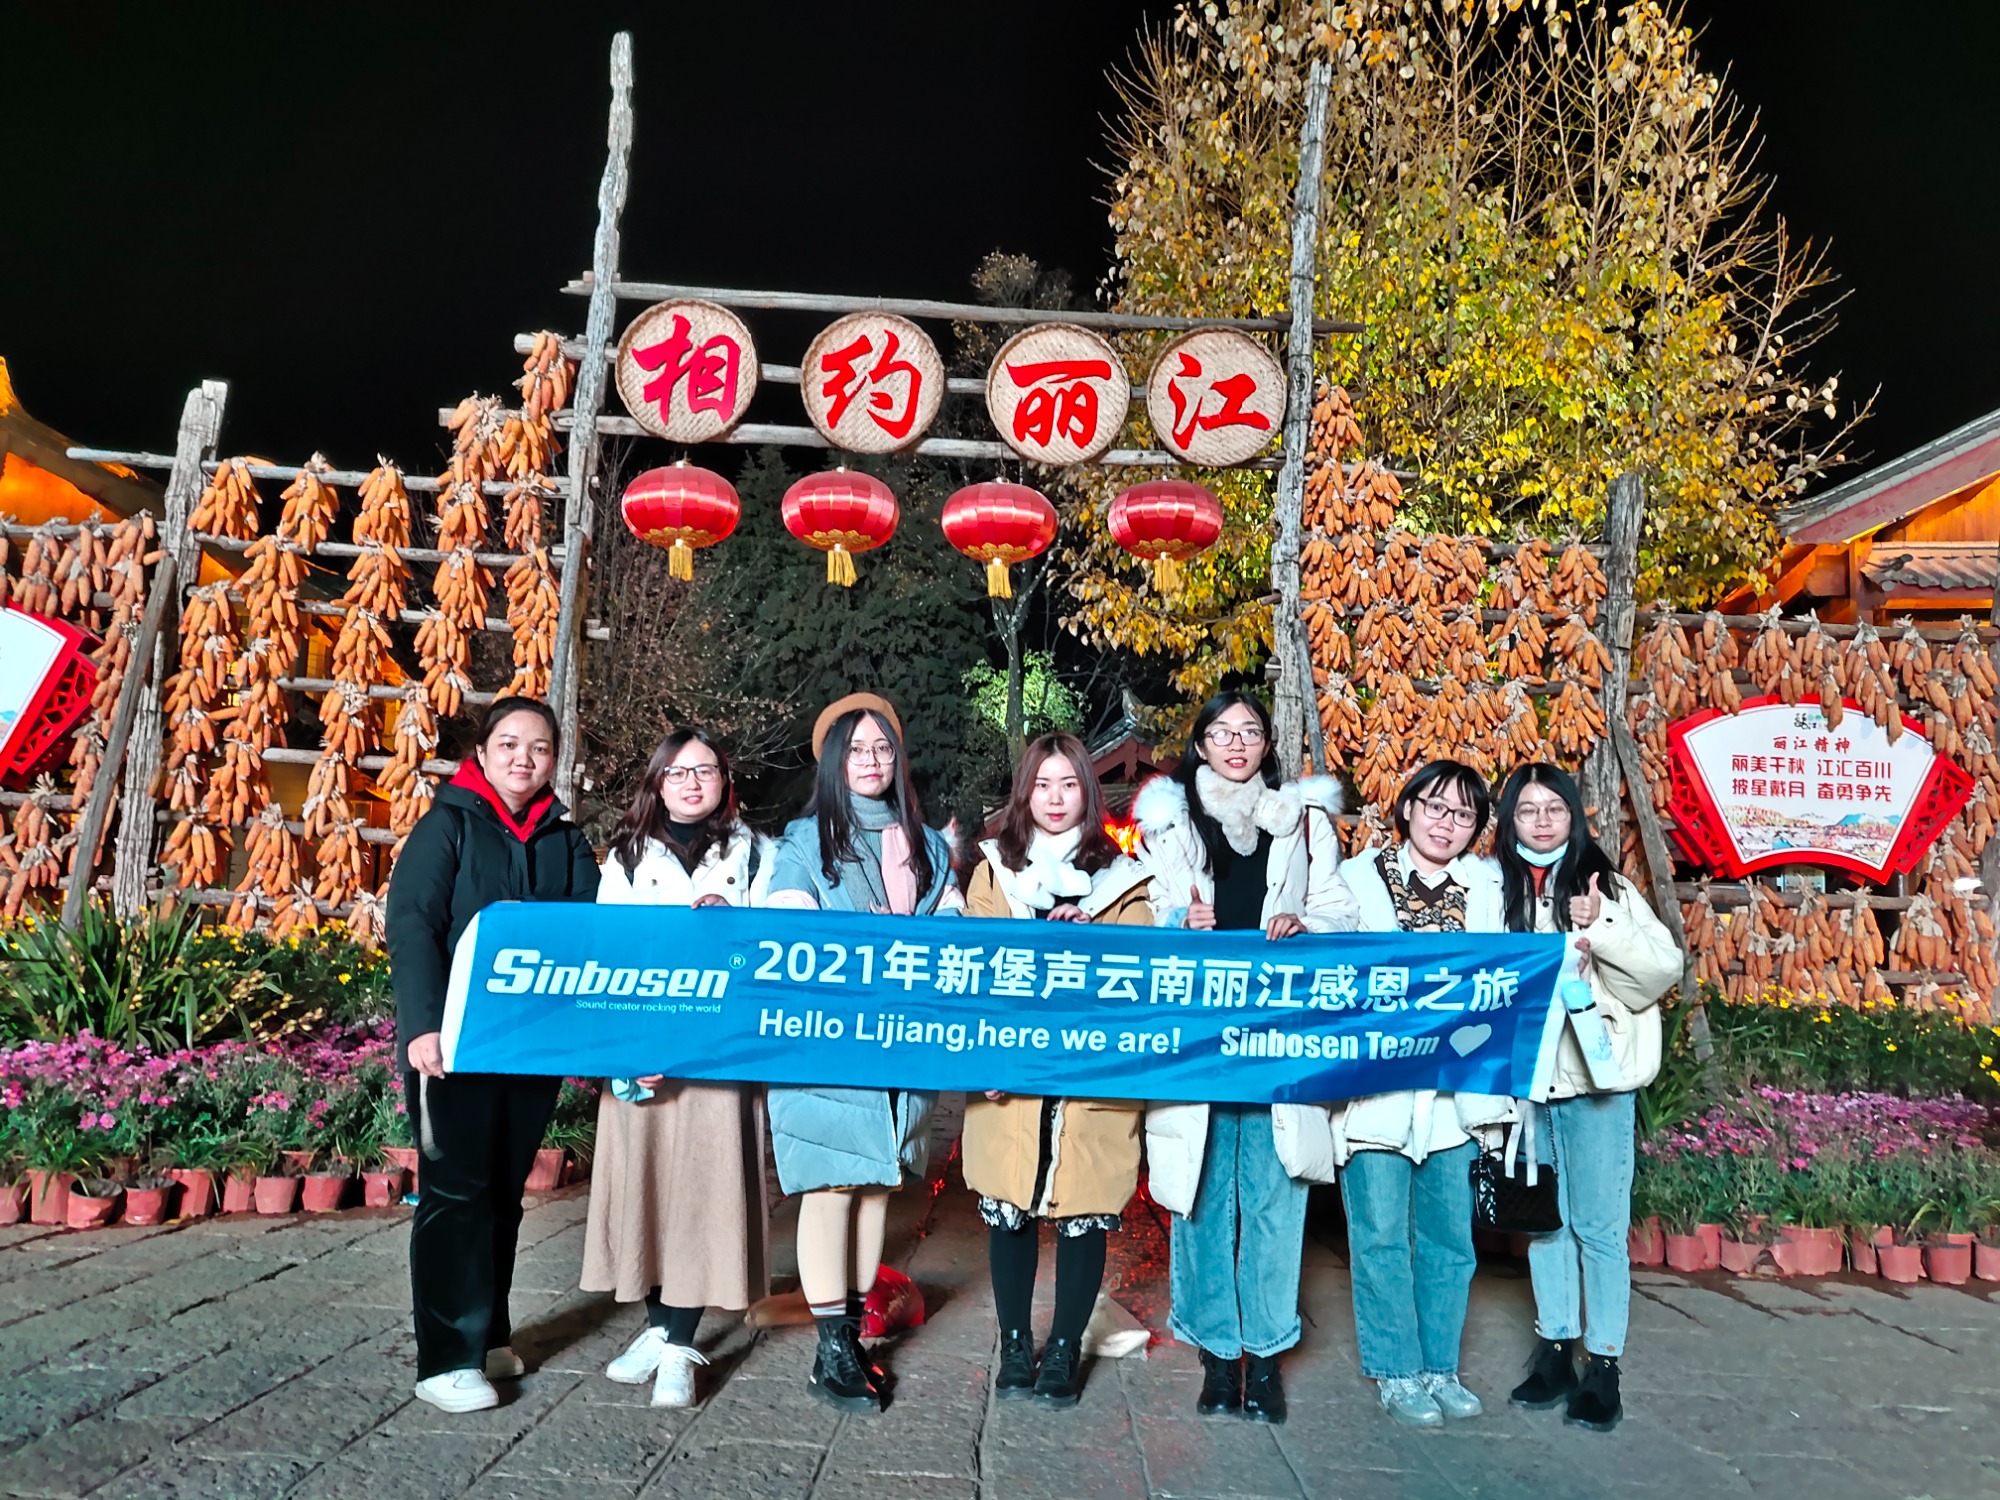 Equipe Sinbosen 4 dias de turismo em Lijiang